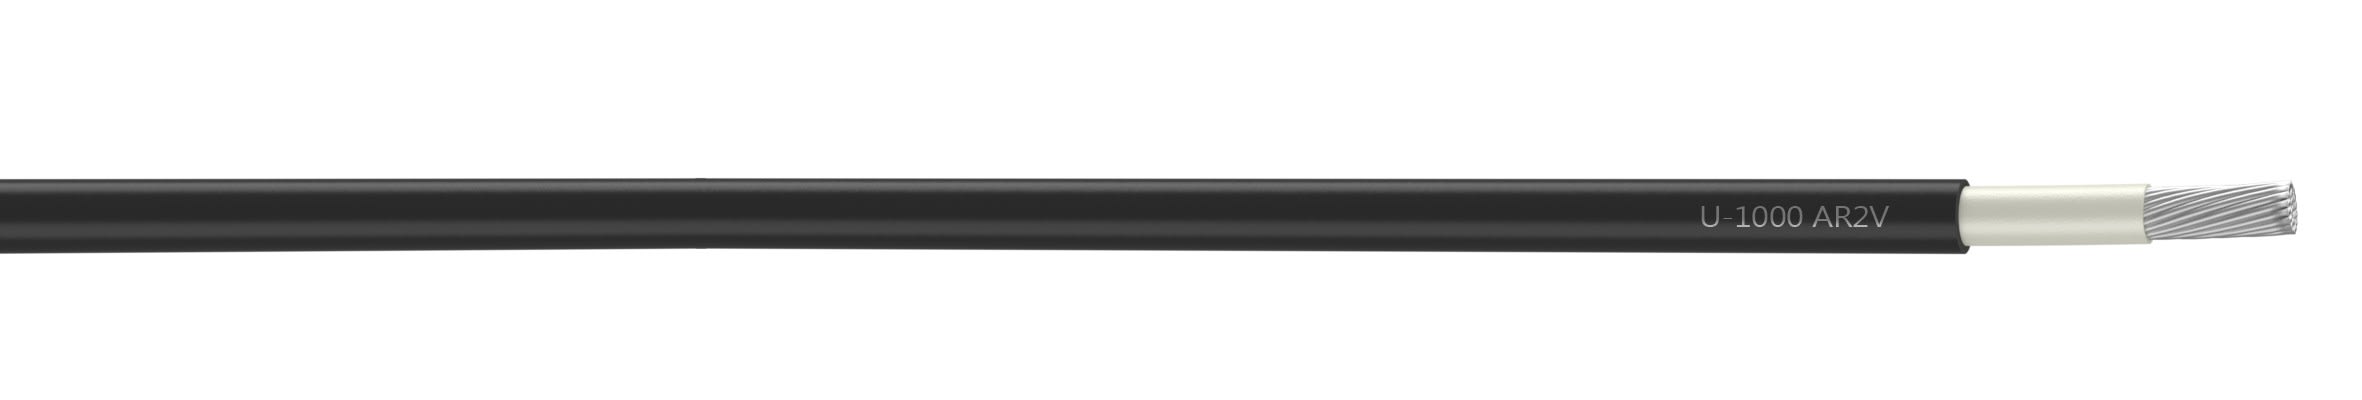 Nexans - Câble rigide U-1000 AR2V aluminium 1x120 longueur à la coupe